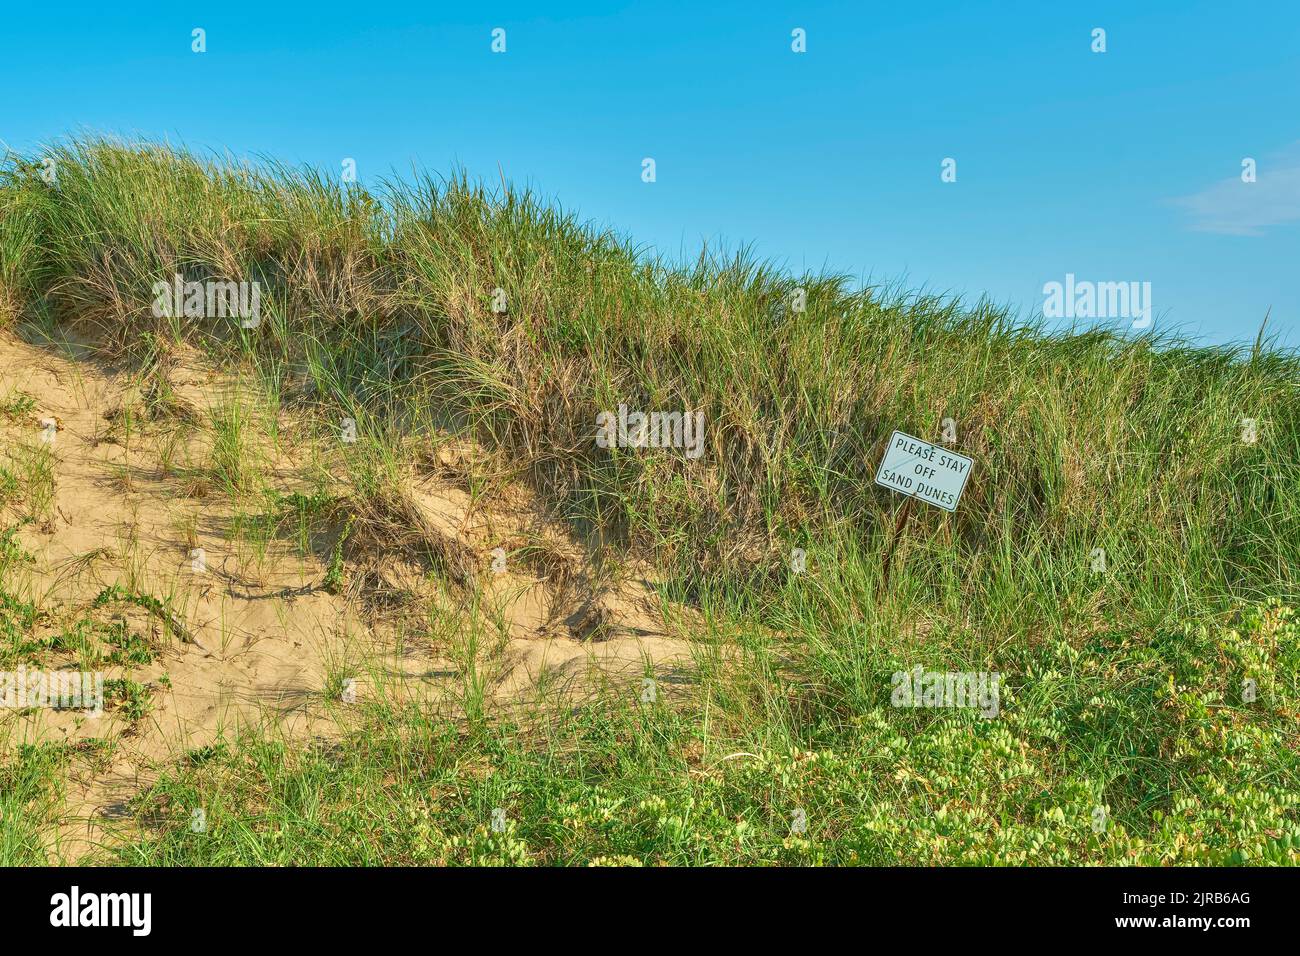 Firme solicitando a los visitantes a Breakwater Bead en Port Hood Nueva Escocia que se mantengan alejados de las dunas de arena sensibles al medio ambiente a lo largo de la playa. Foto de stock